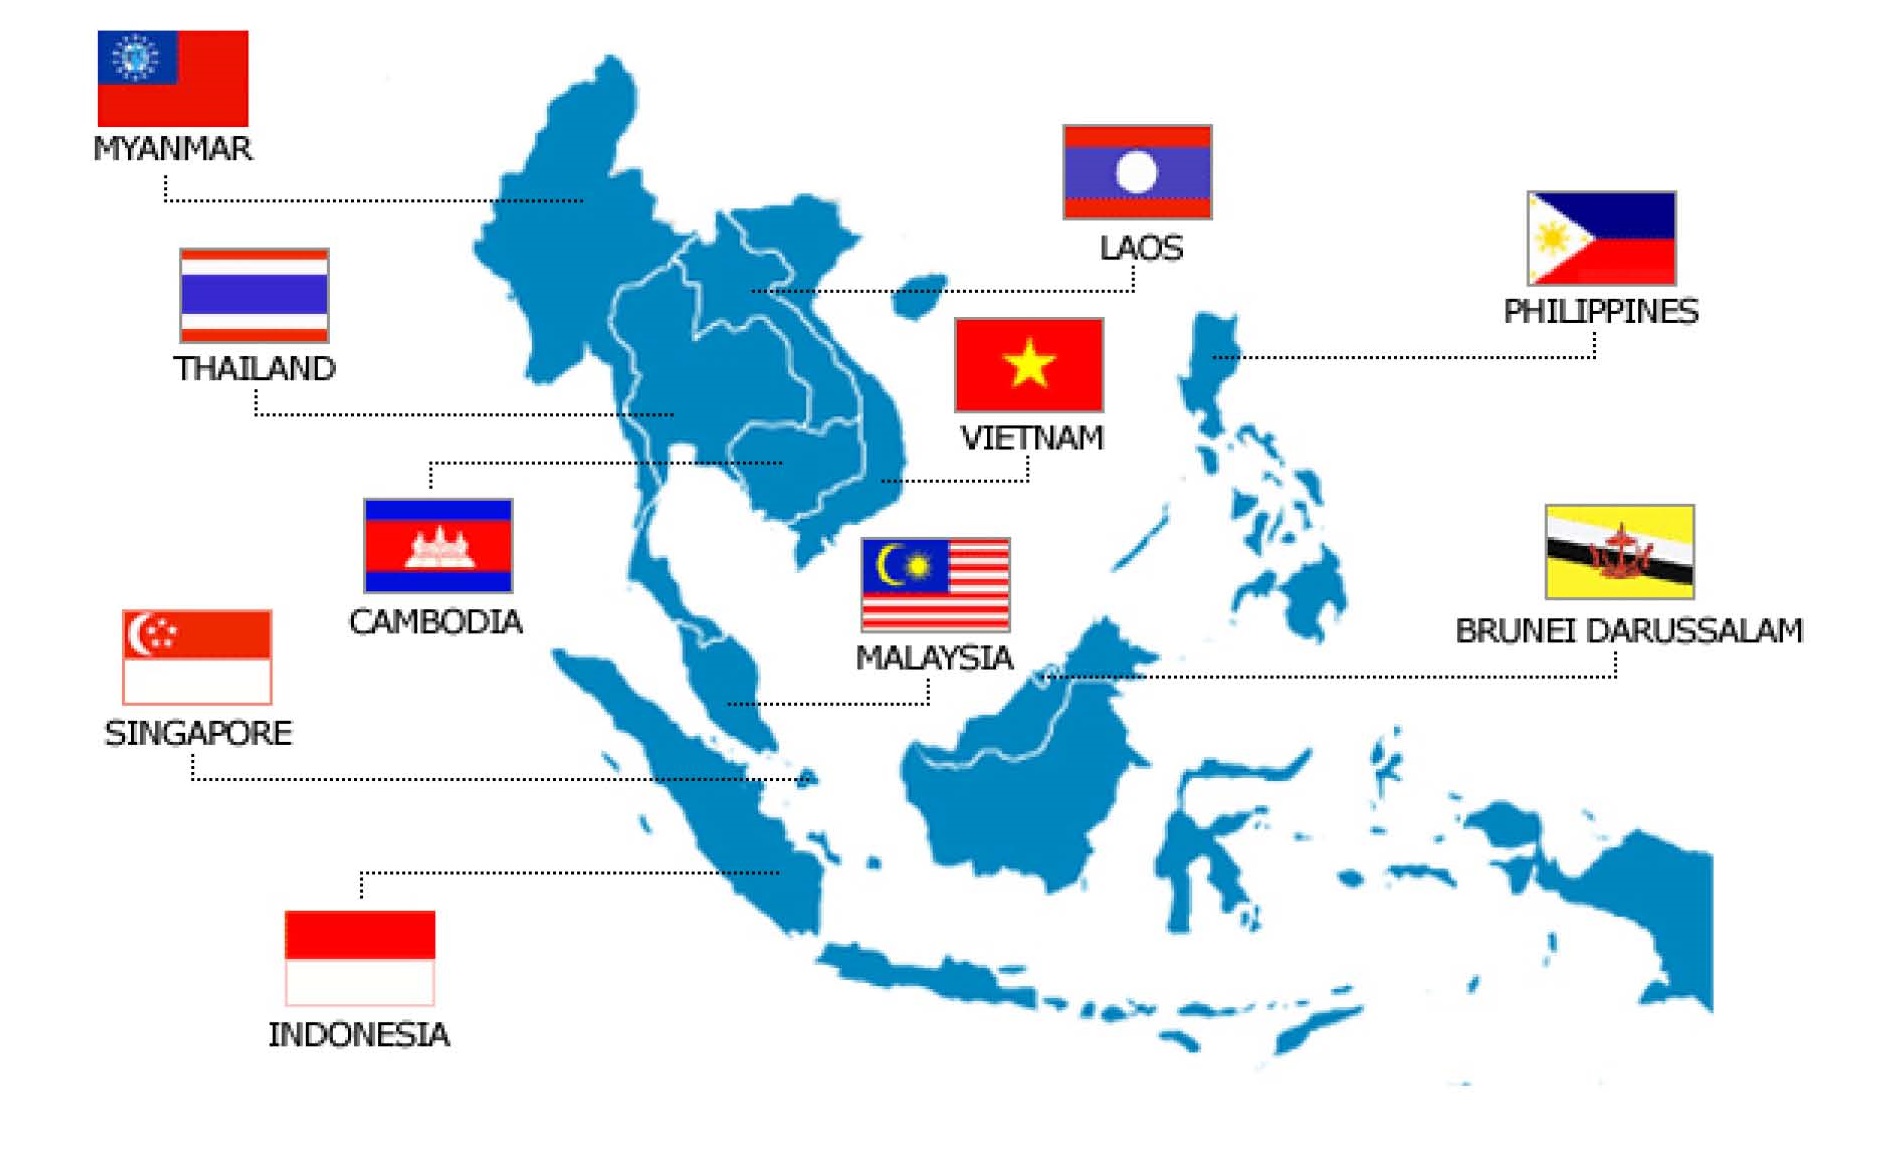 La tension persiste entre membres de l’ASEAN